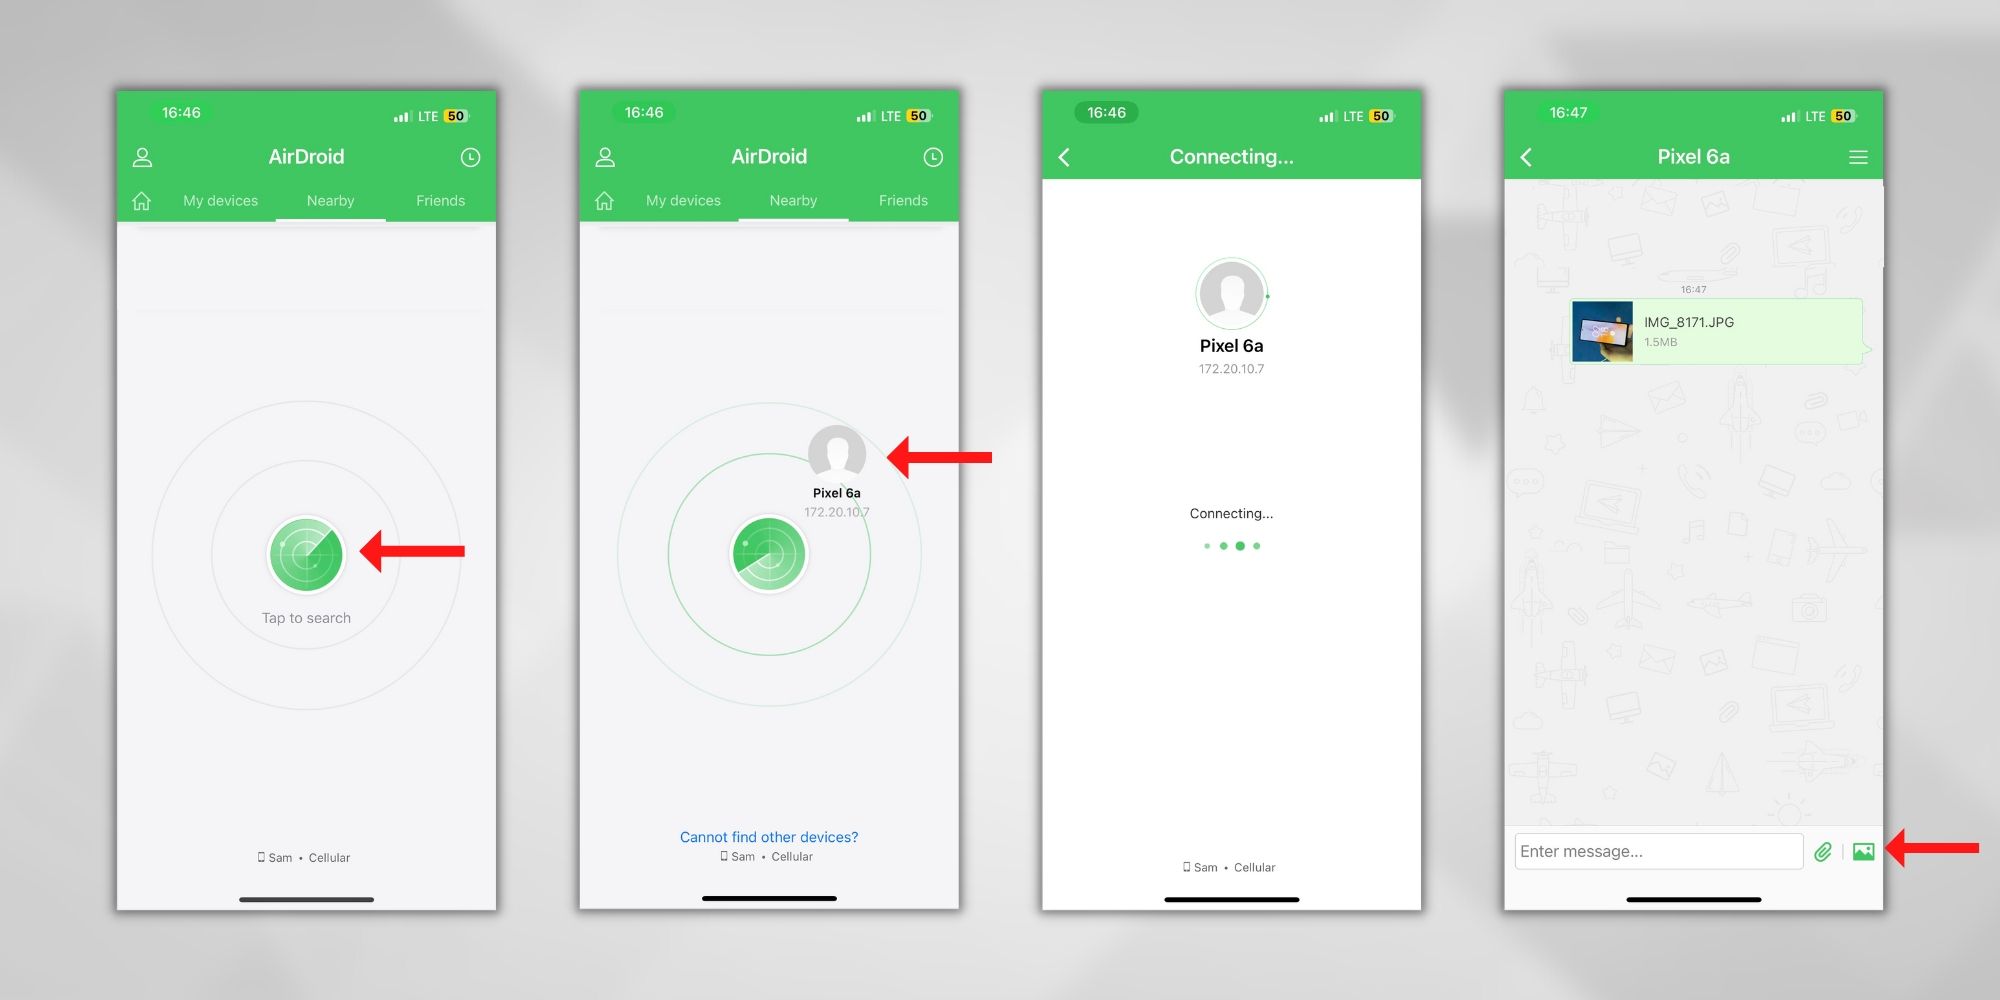 tangkapan layar langkah-langkah untuk mentransfer file dari iPhone ke Android menggunakan AirDroid